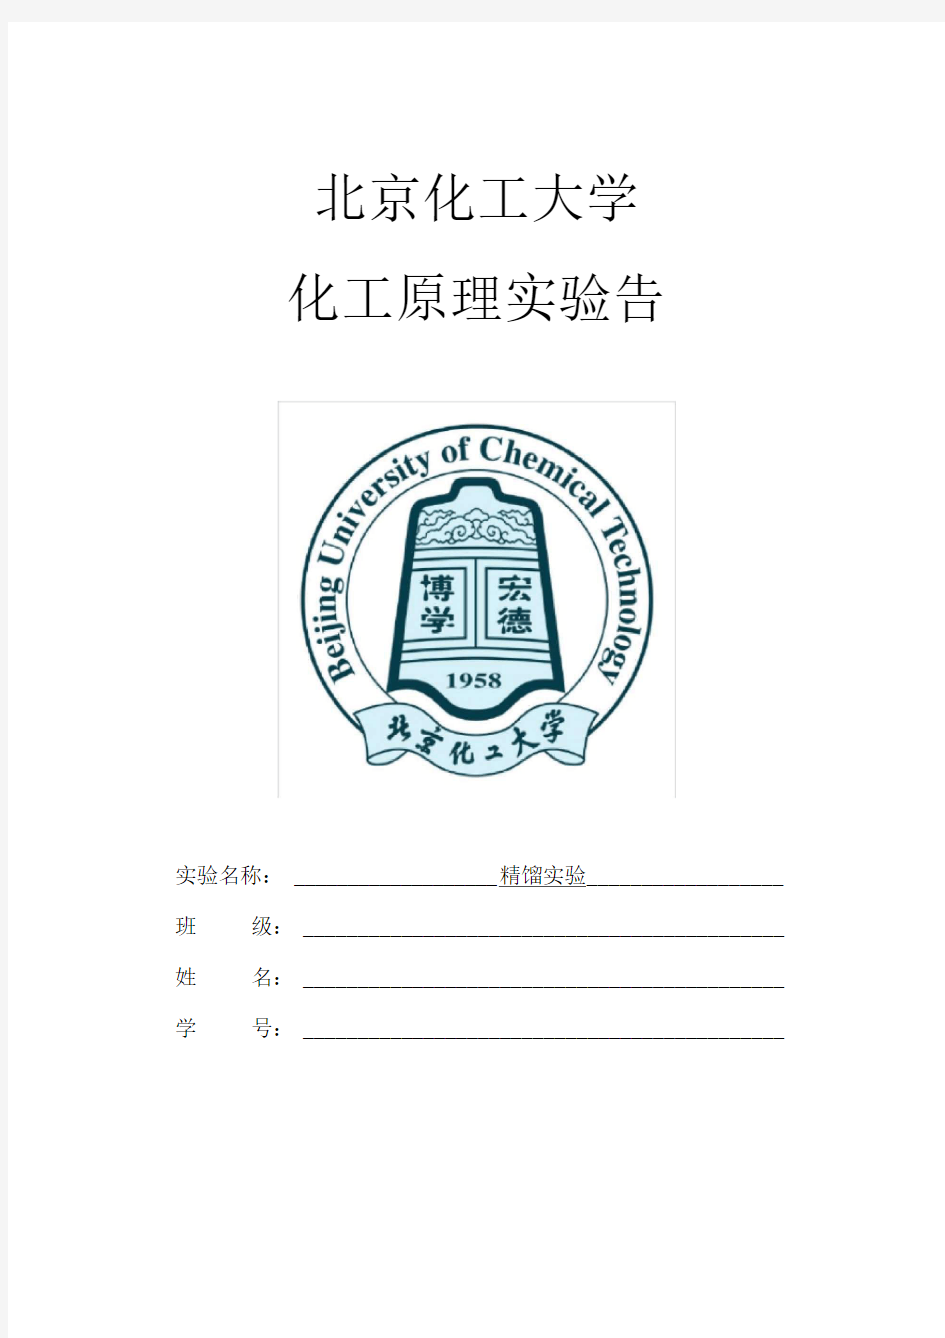 北京化工大学-精馏实验报告-2015